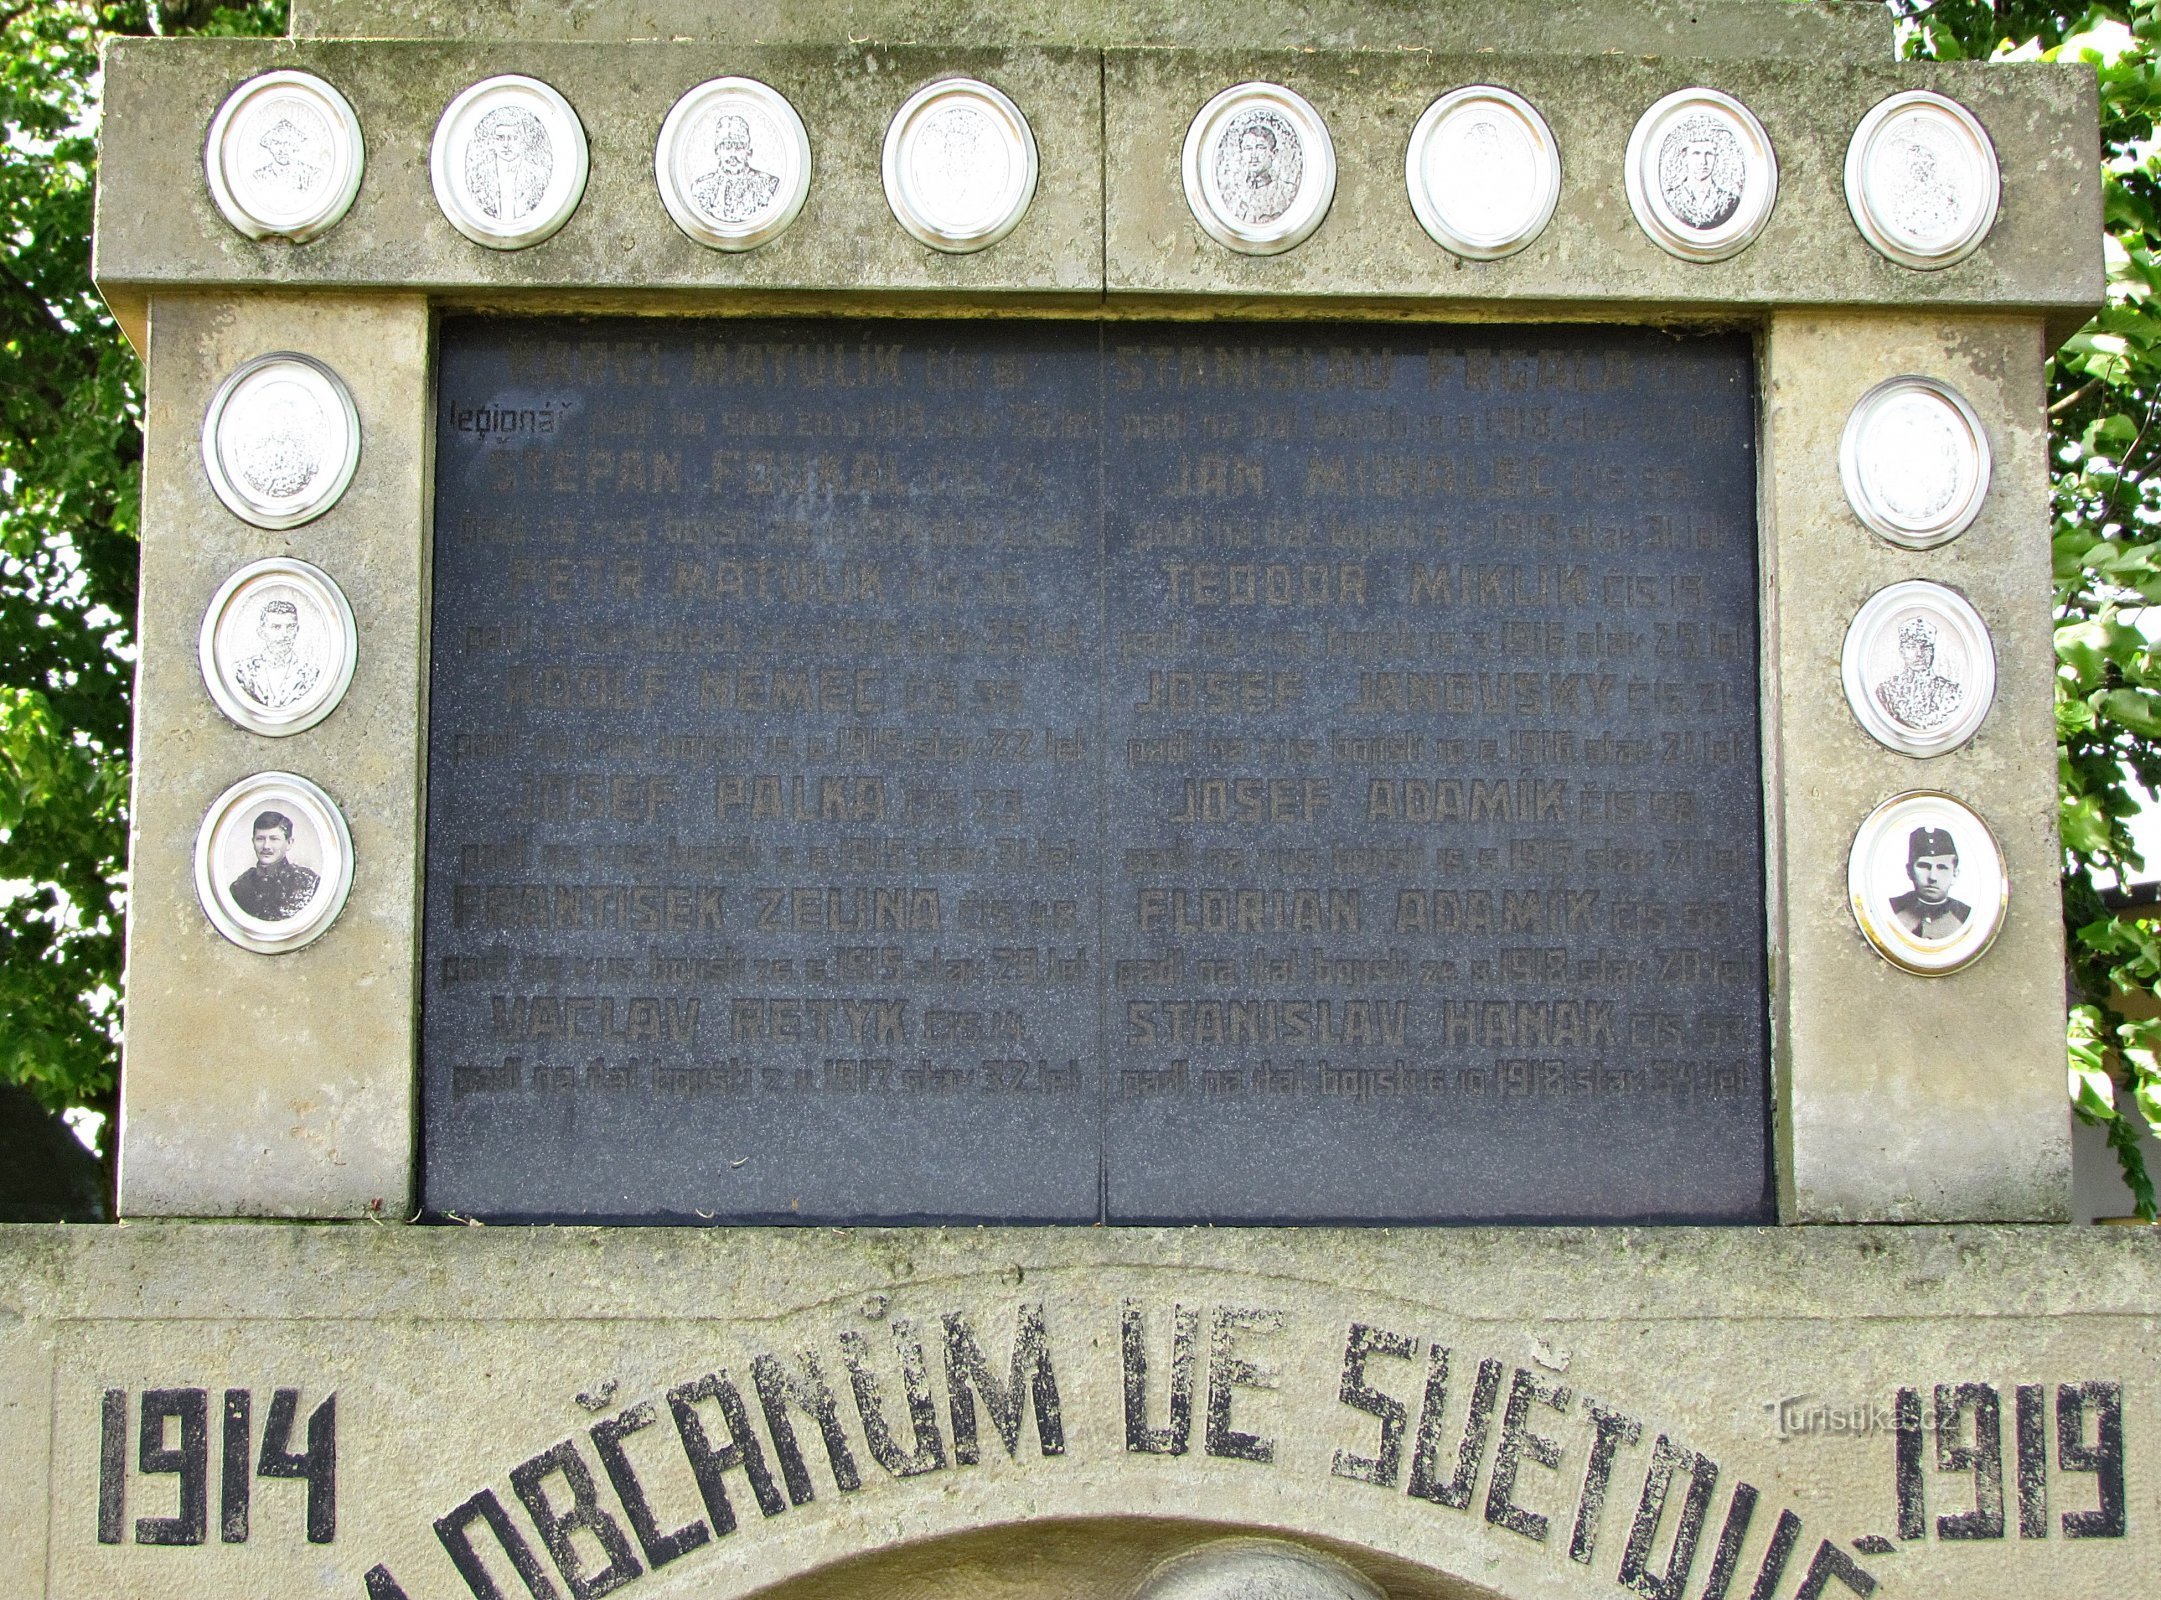 Míškovice - Đài tưởng niệm những người đã ngã xuống, nhà nguyện và nghĩa trang